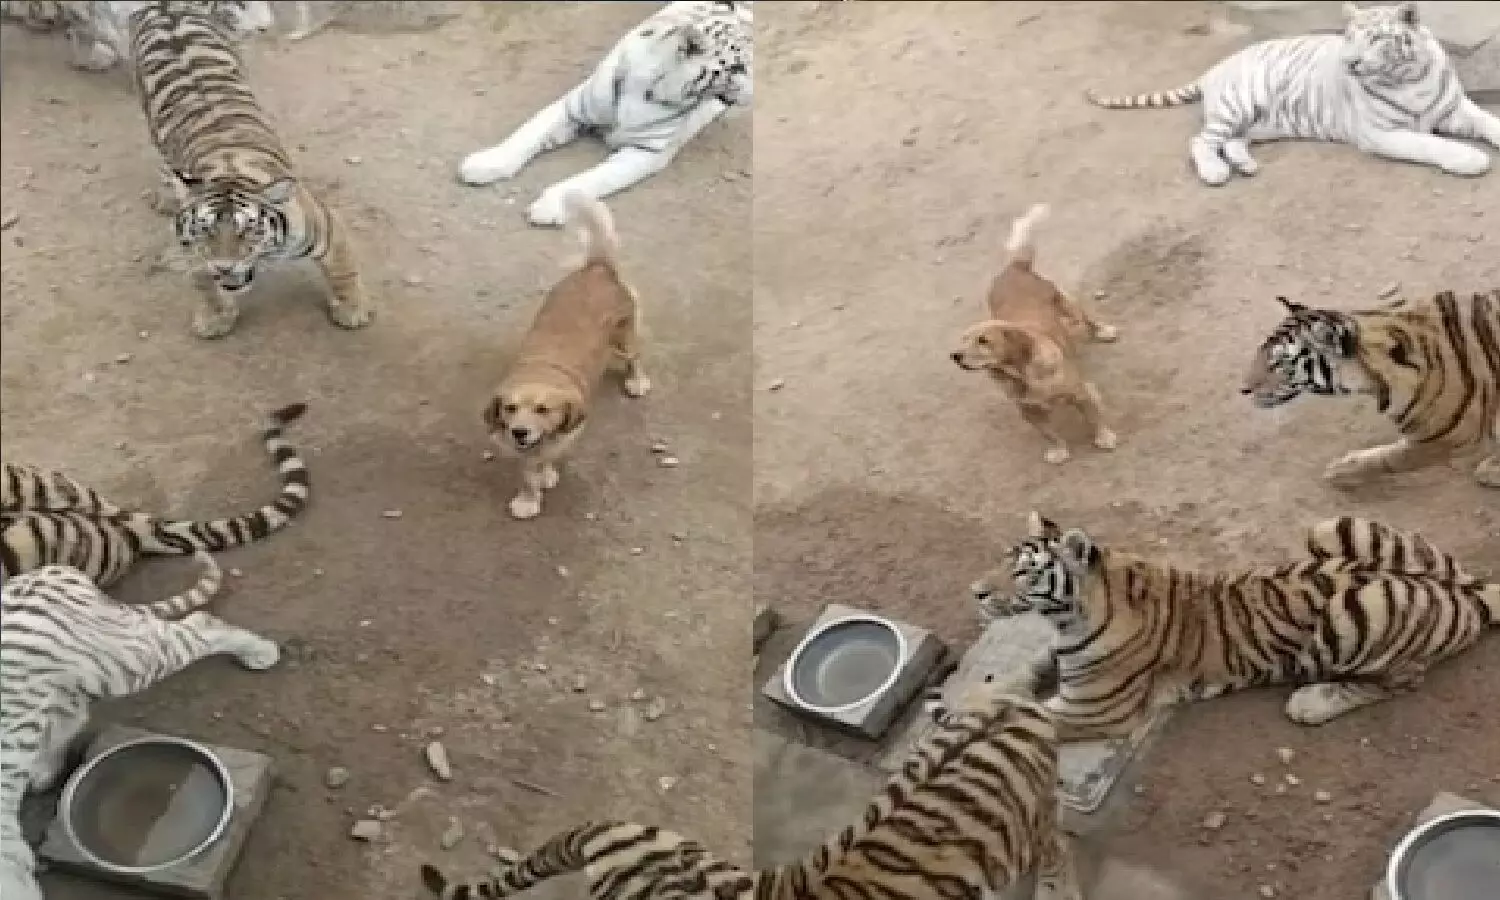 मध्य प्रदेश के बाघों को कुत्तों से खतरा! Tigers को बचाने के लिए Dogs को वैक्सीन लग रही